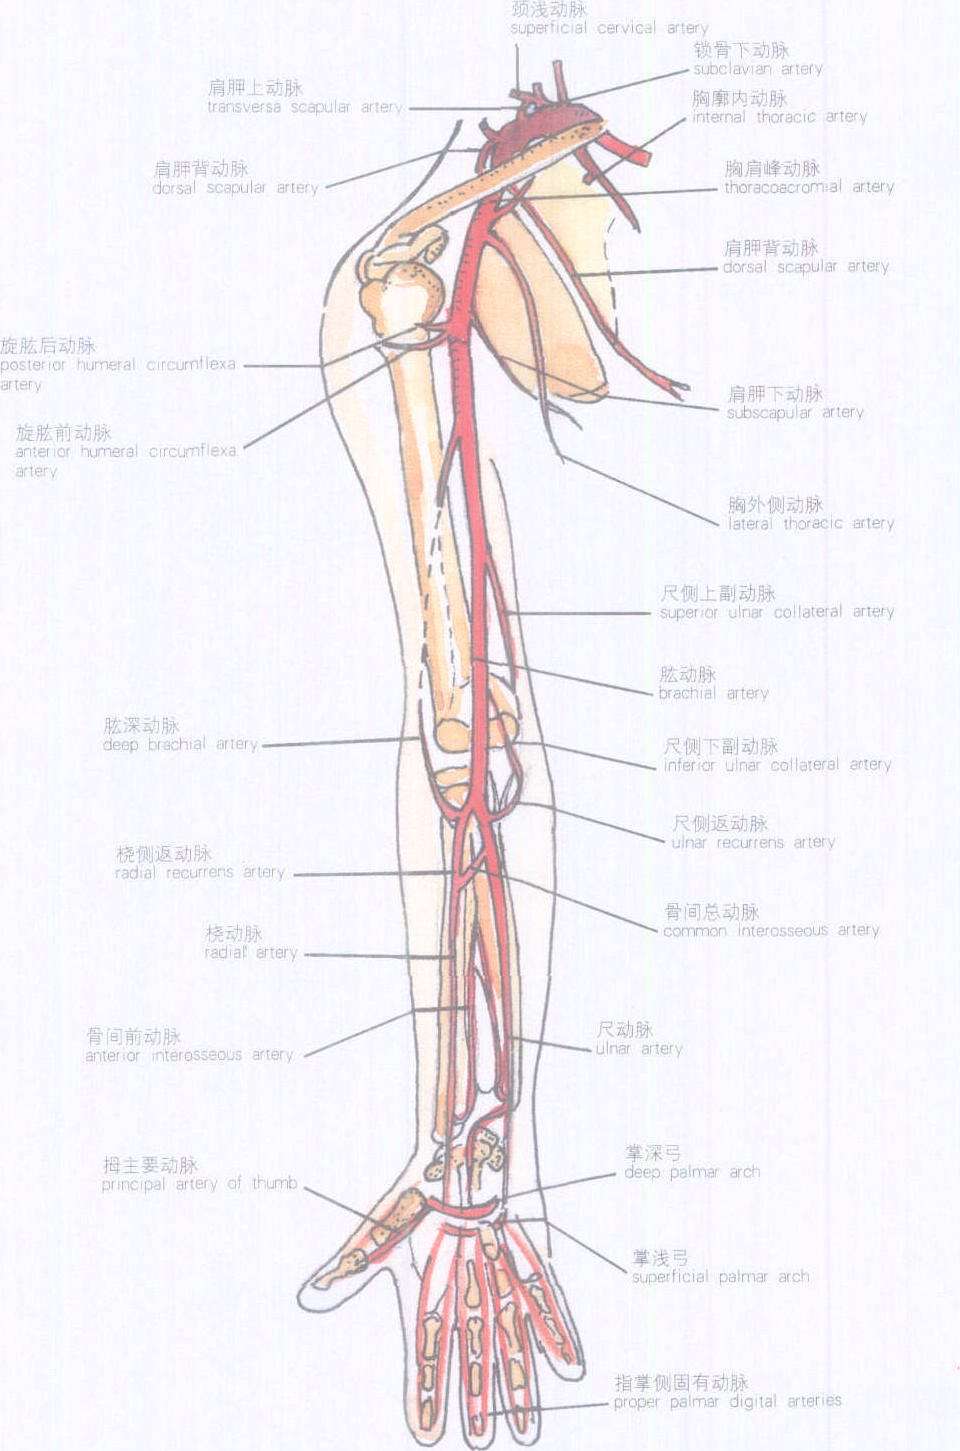 桥臂供血动脉图片